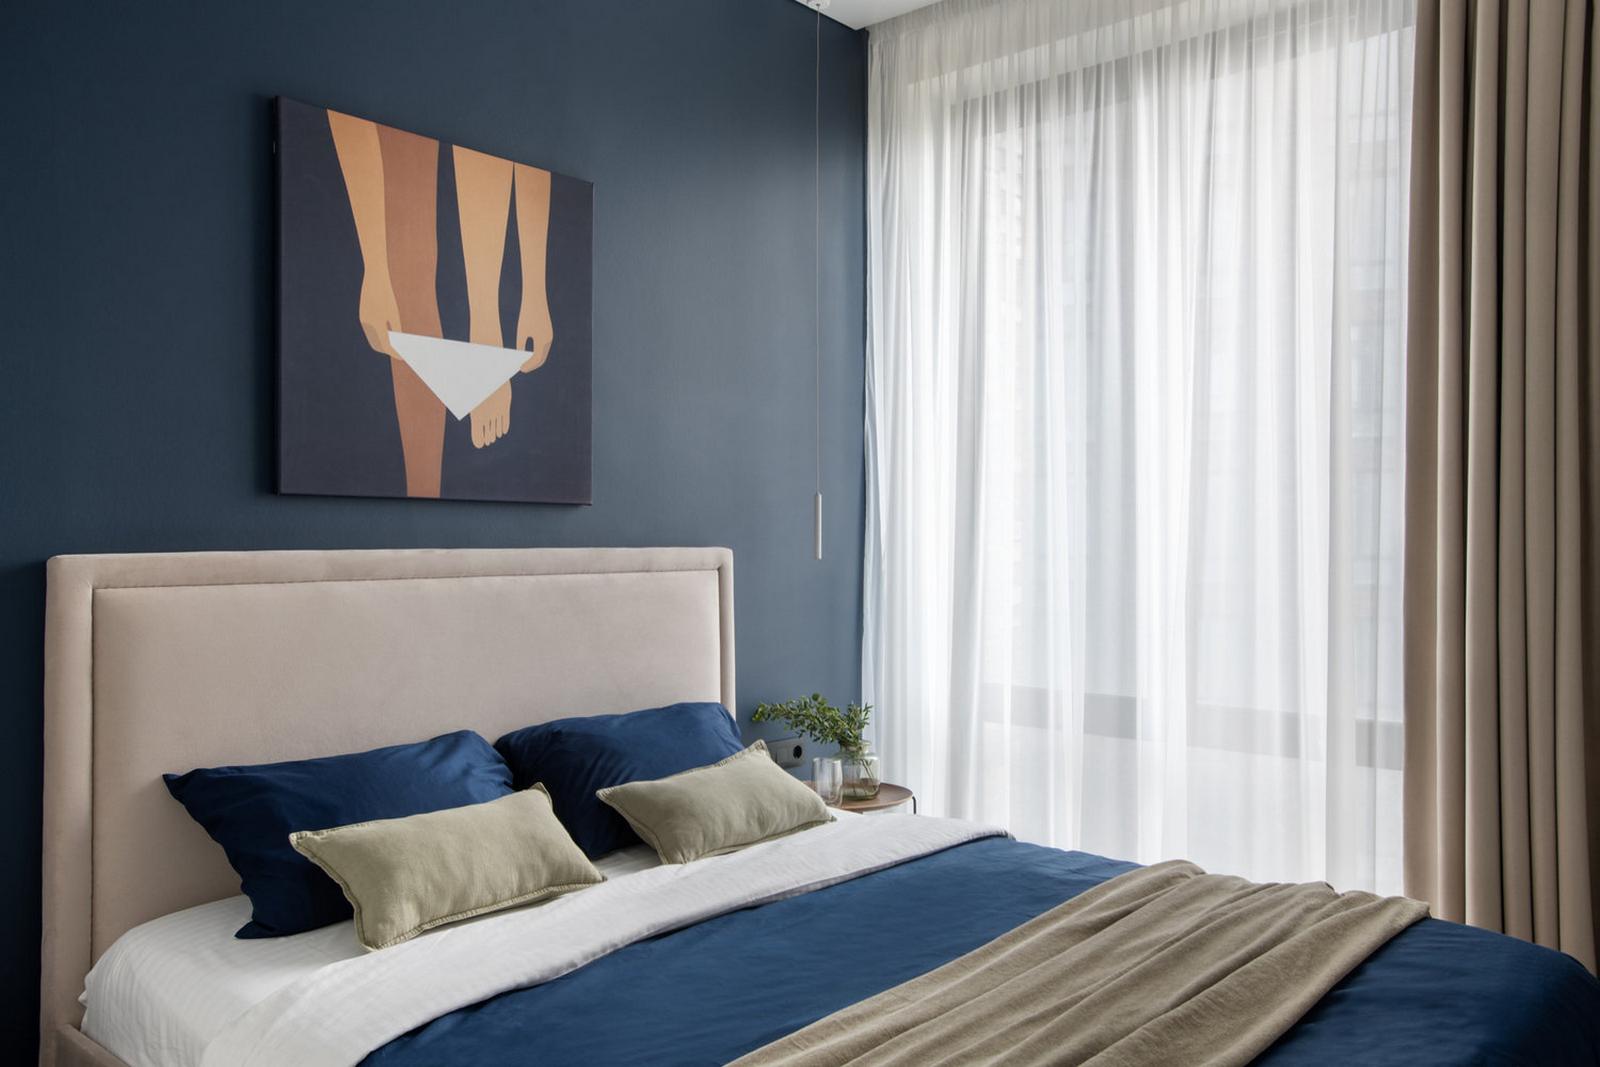 Phòng ngủ cũng sở hữu cửa sổ đầy nắng ấm với 2 lớp rèm che mỏng, dày để cách âm và tạo sự riêng tư khi cần. Đầu giường vững chãi với gam màu be thanh lịch. Sắc xanh lam bao phủ bức tường, ga gối và mềm để tạo điểm nhấn.